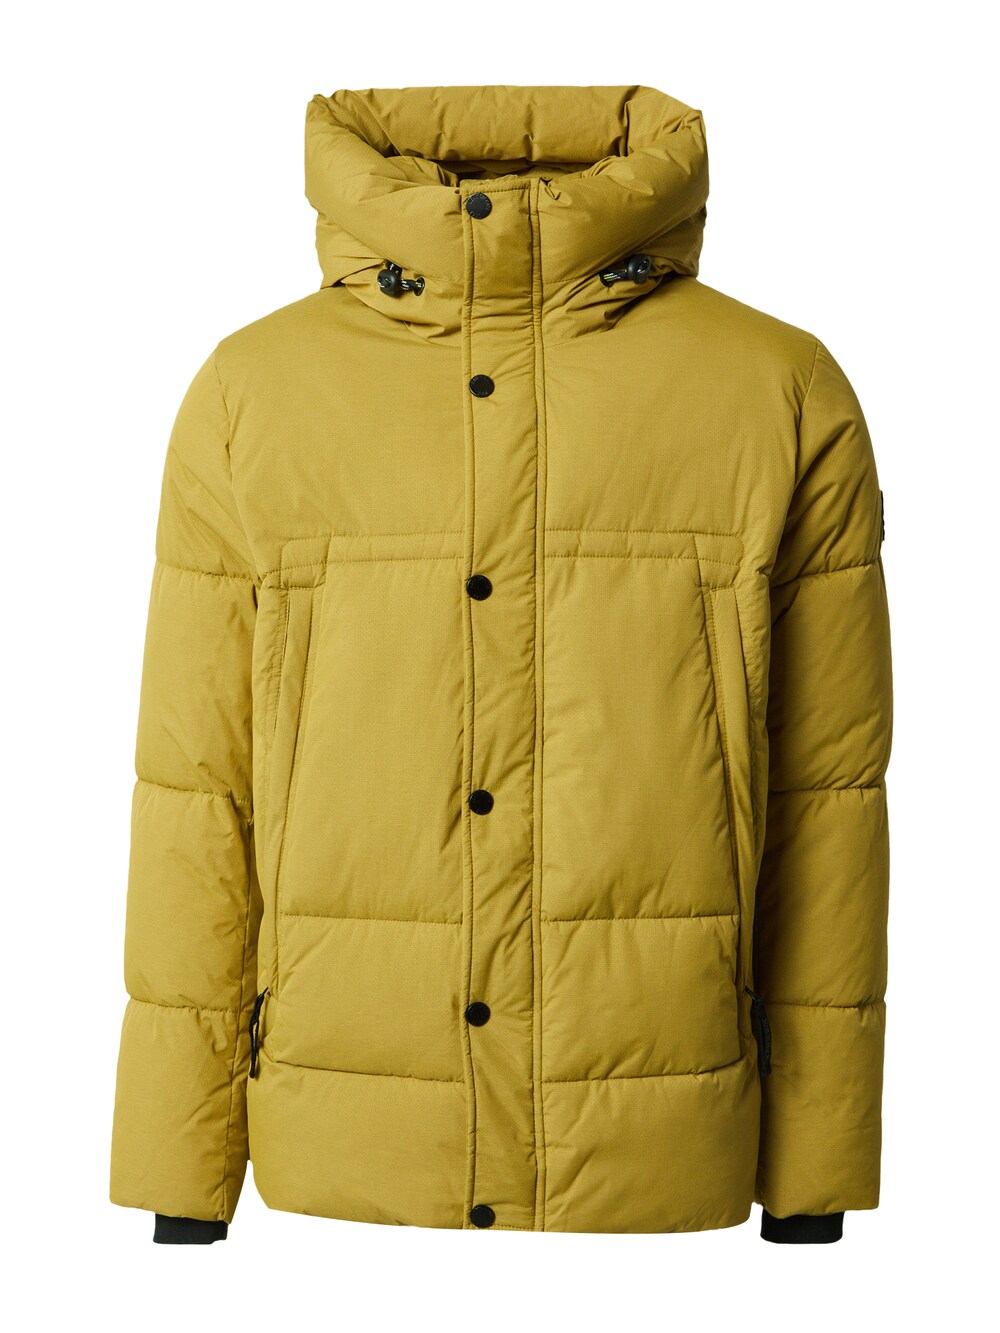 Зимняя куртка INDICODE JEANS Jobo, желтый зимняя куртка indicode jeans christof коричневый